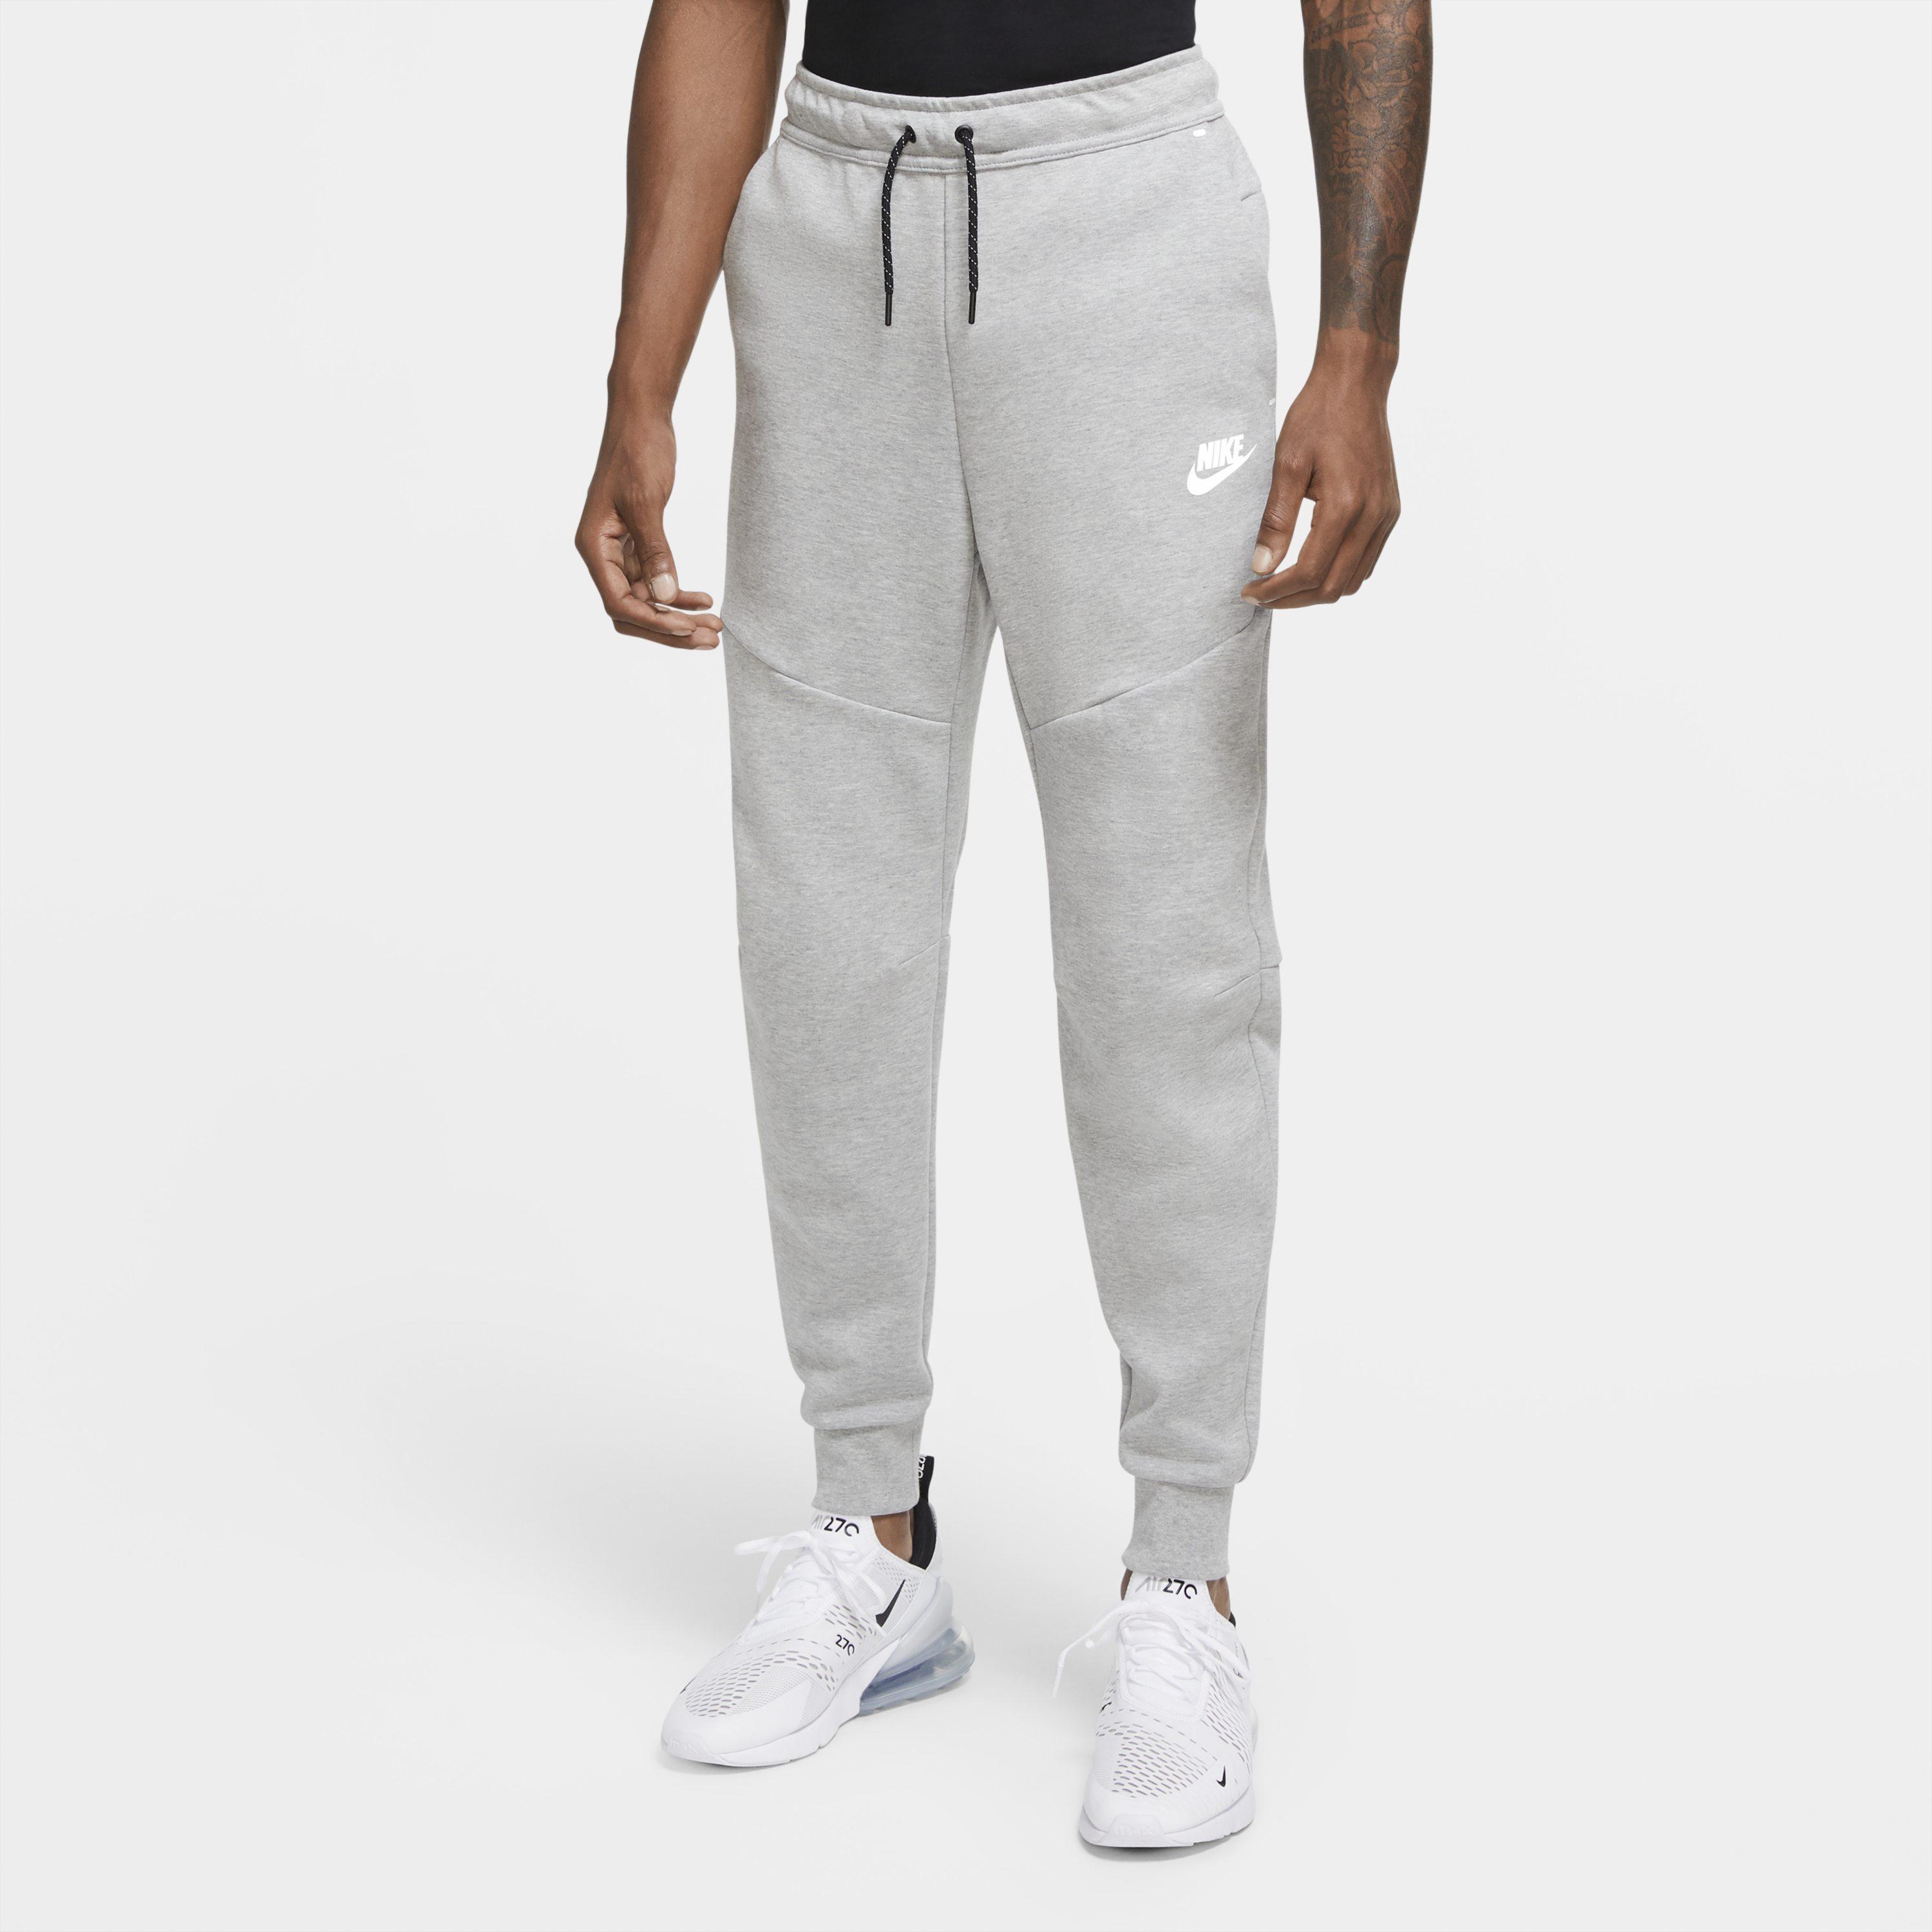 Nike Sportswear Tech Fleece Joggers in Grey (Grey) for Men - Lyst